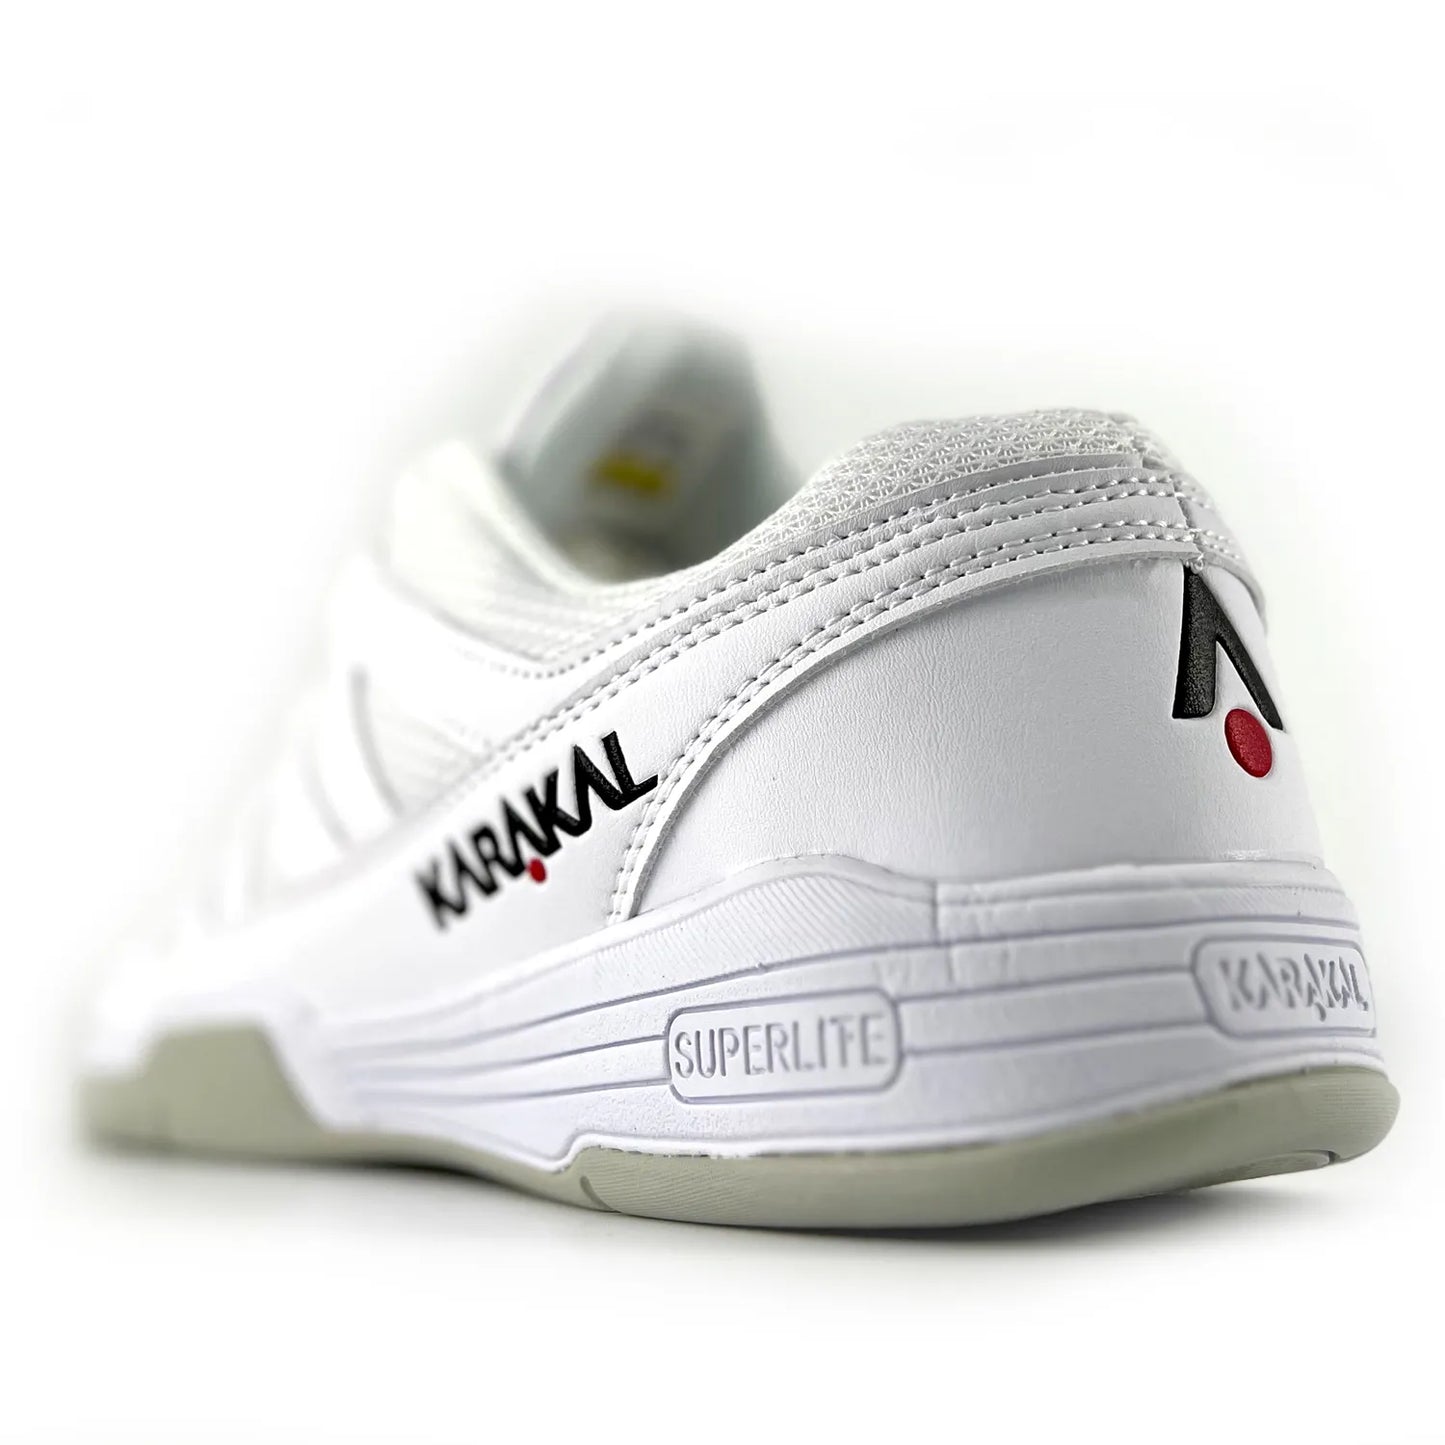 Karakal Pro Lite Squash Shoe White